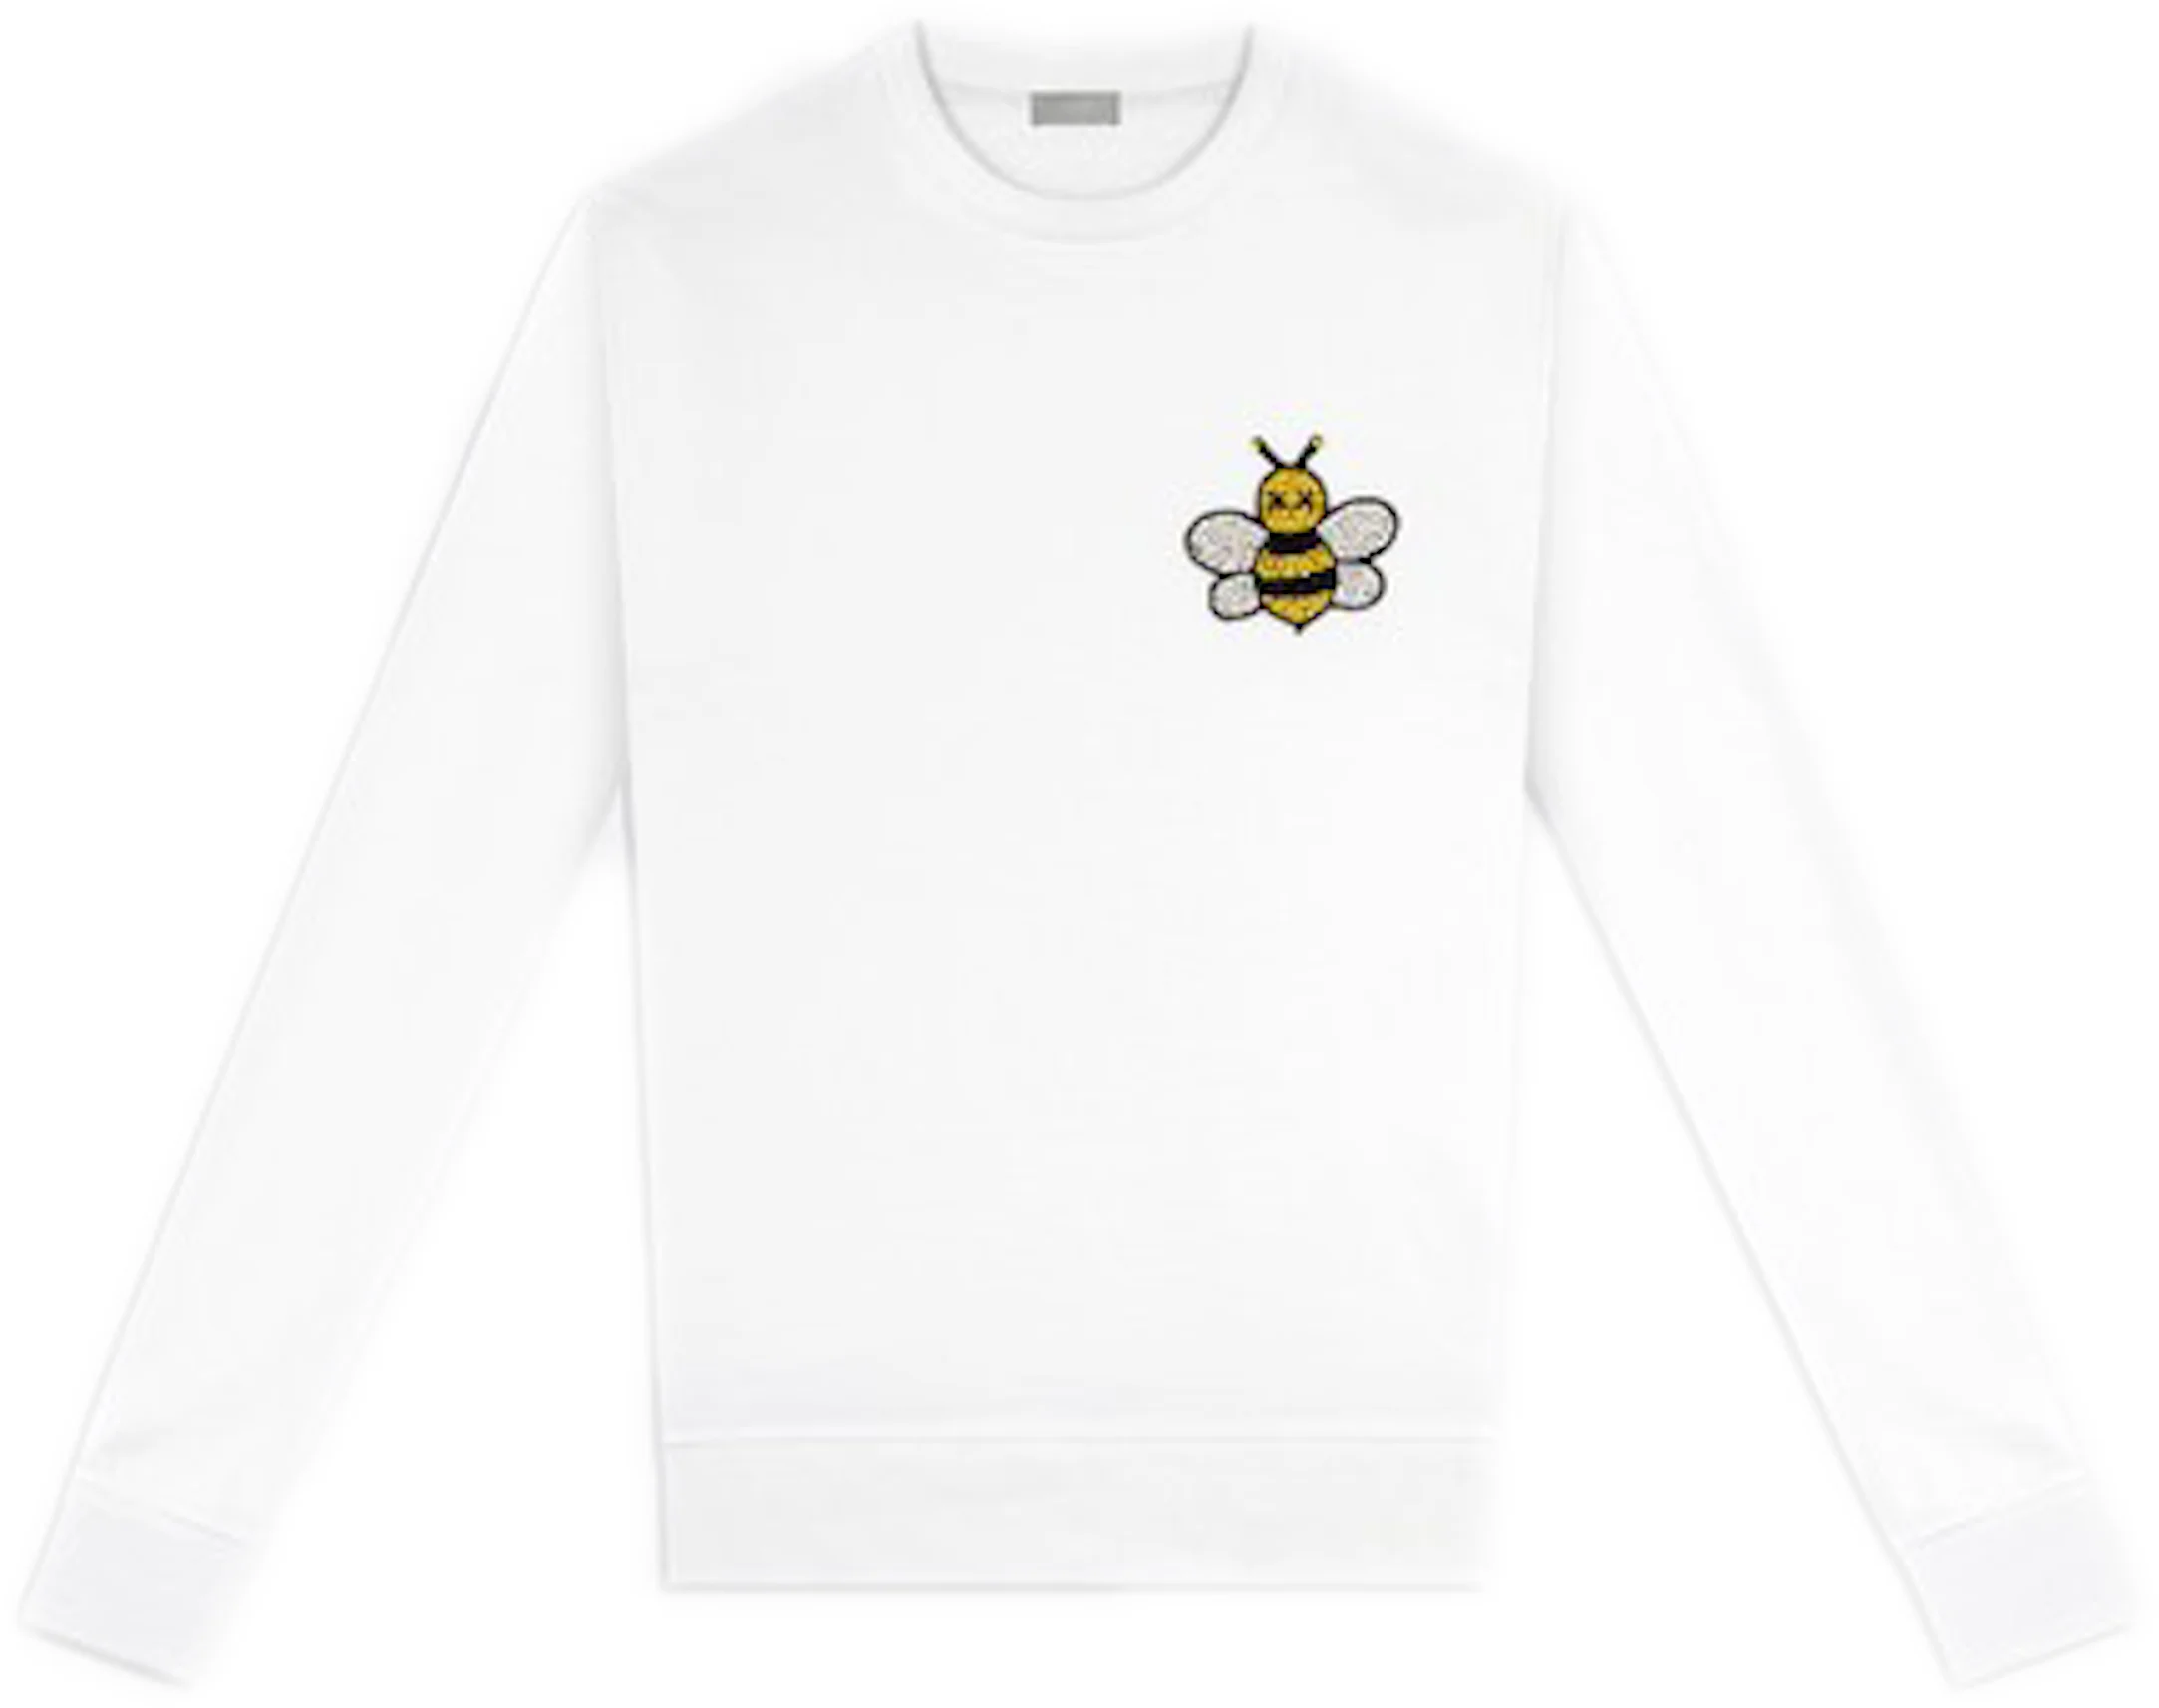 KAWS x Dior Jeweled Bee Crewneck Sweatshirt White